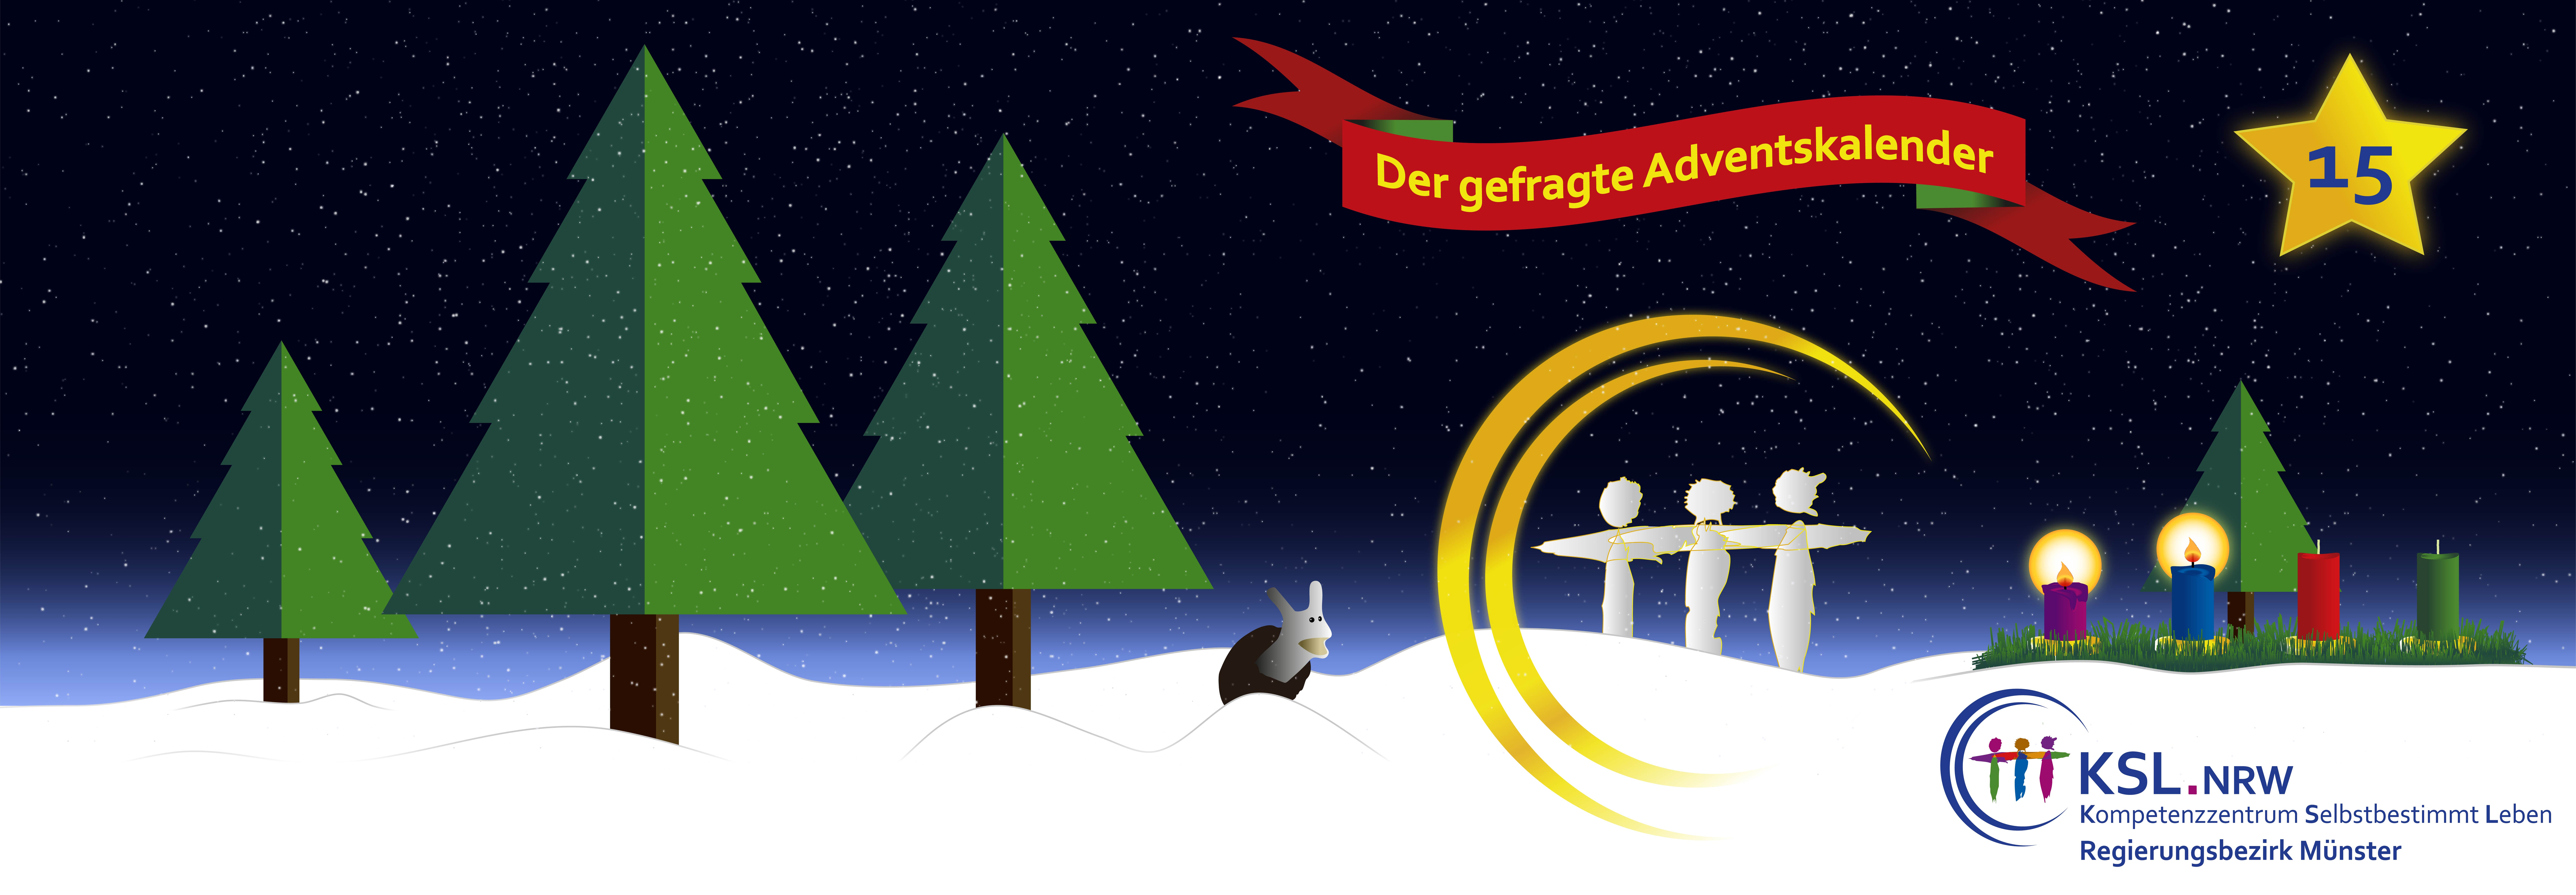 Der gefragte Adventskalender - KSL Münster - weihnachtlicher Hintergrund - vier Tannenbäume - ein Stern mit der Nummer 15 - ein Adventskranz mit vier Kerzen